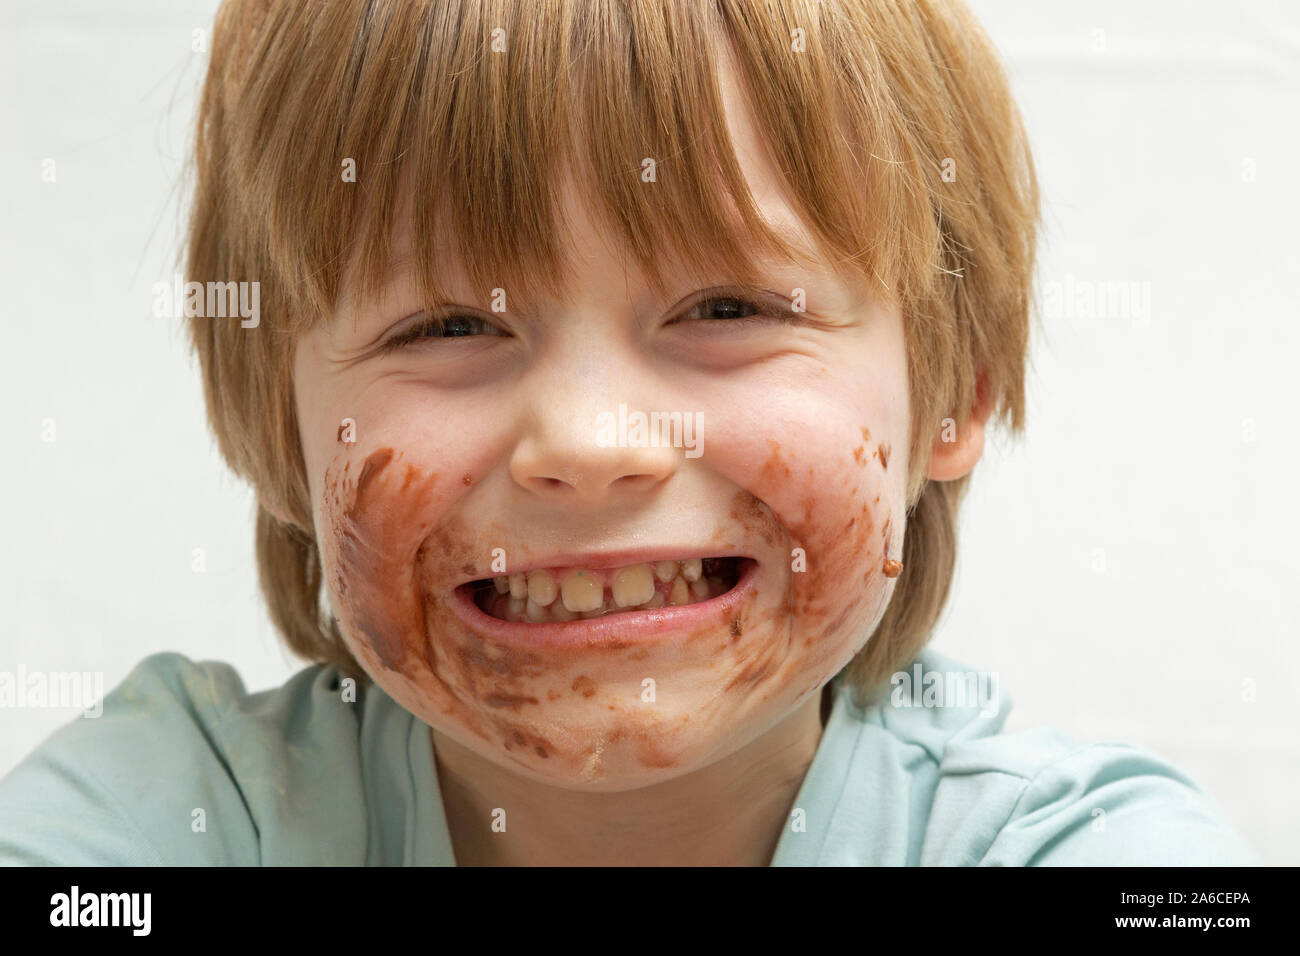 Porträt eines kleinen Jungen, der nur Schokolade essen wurde. Stockfoto